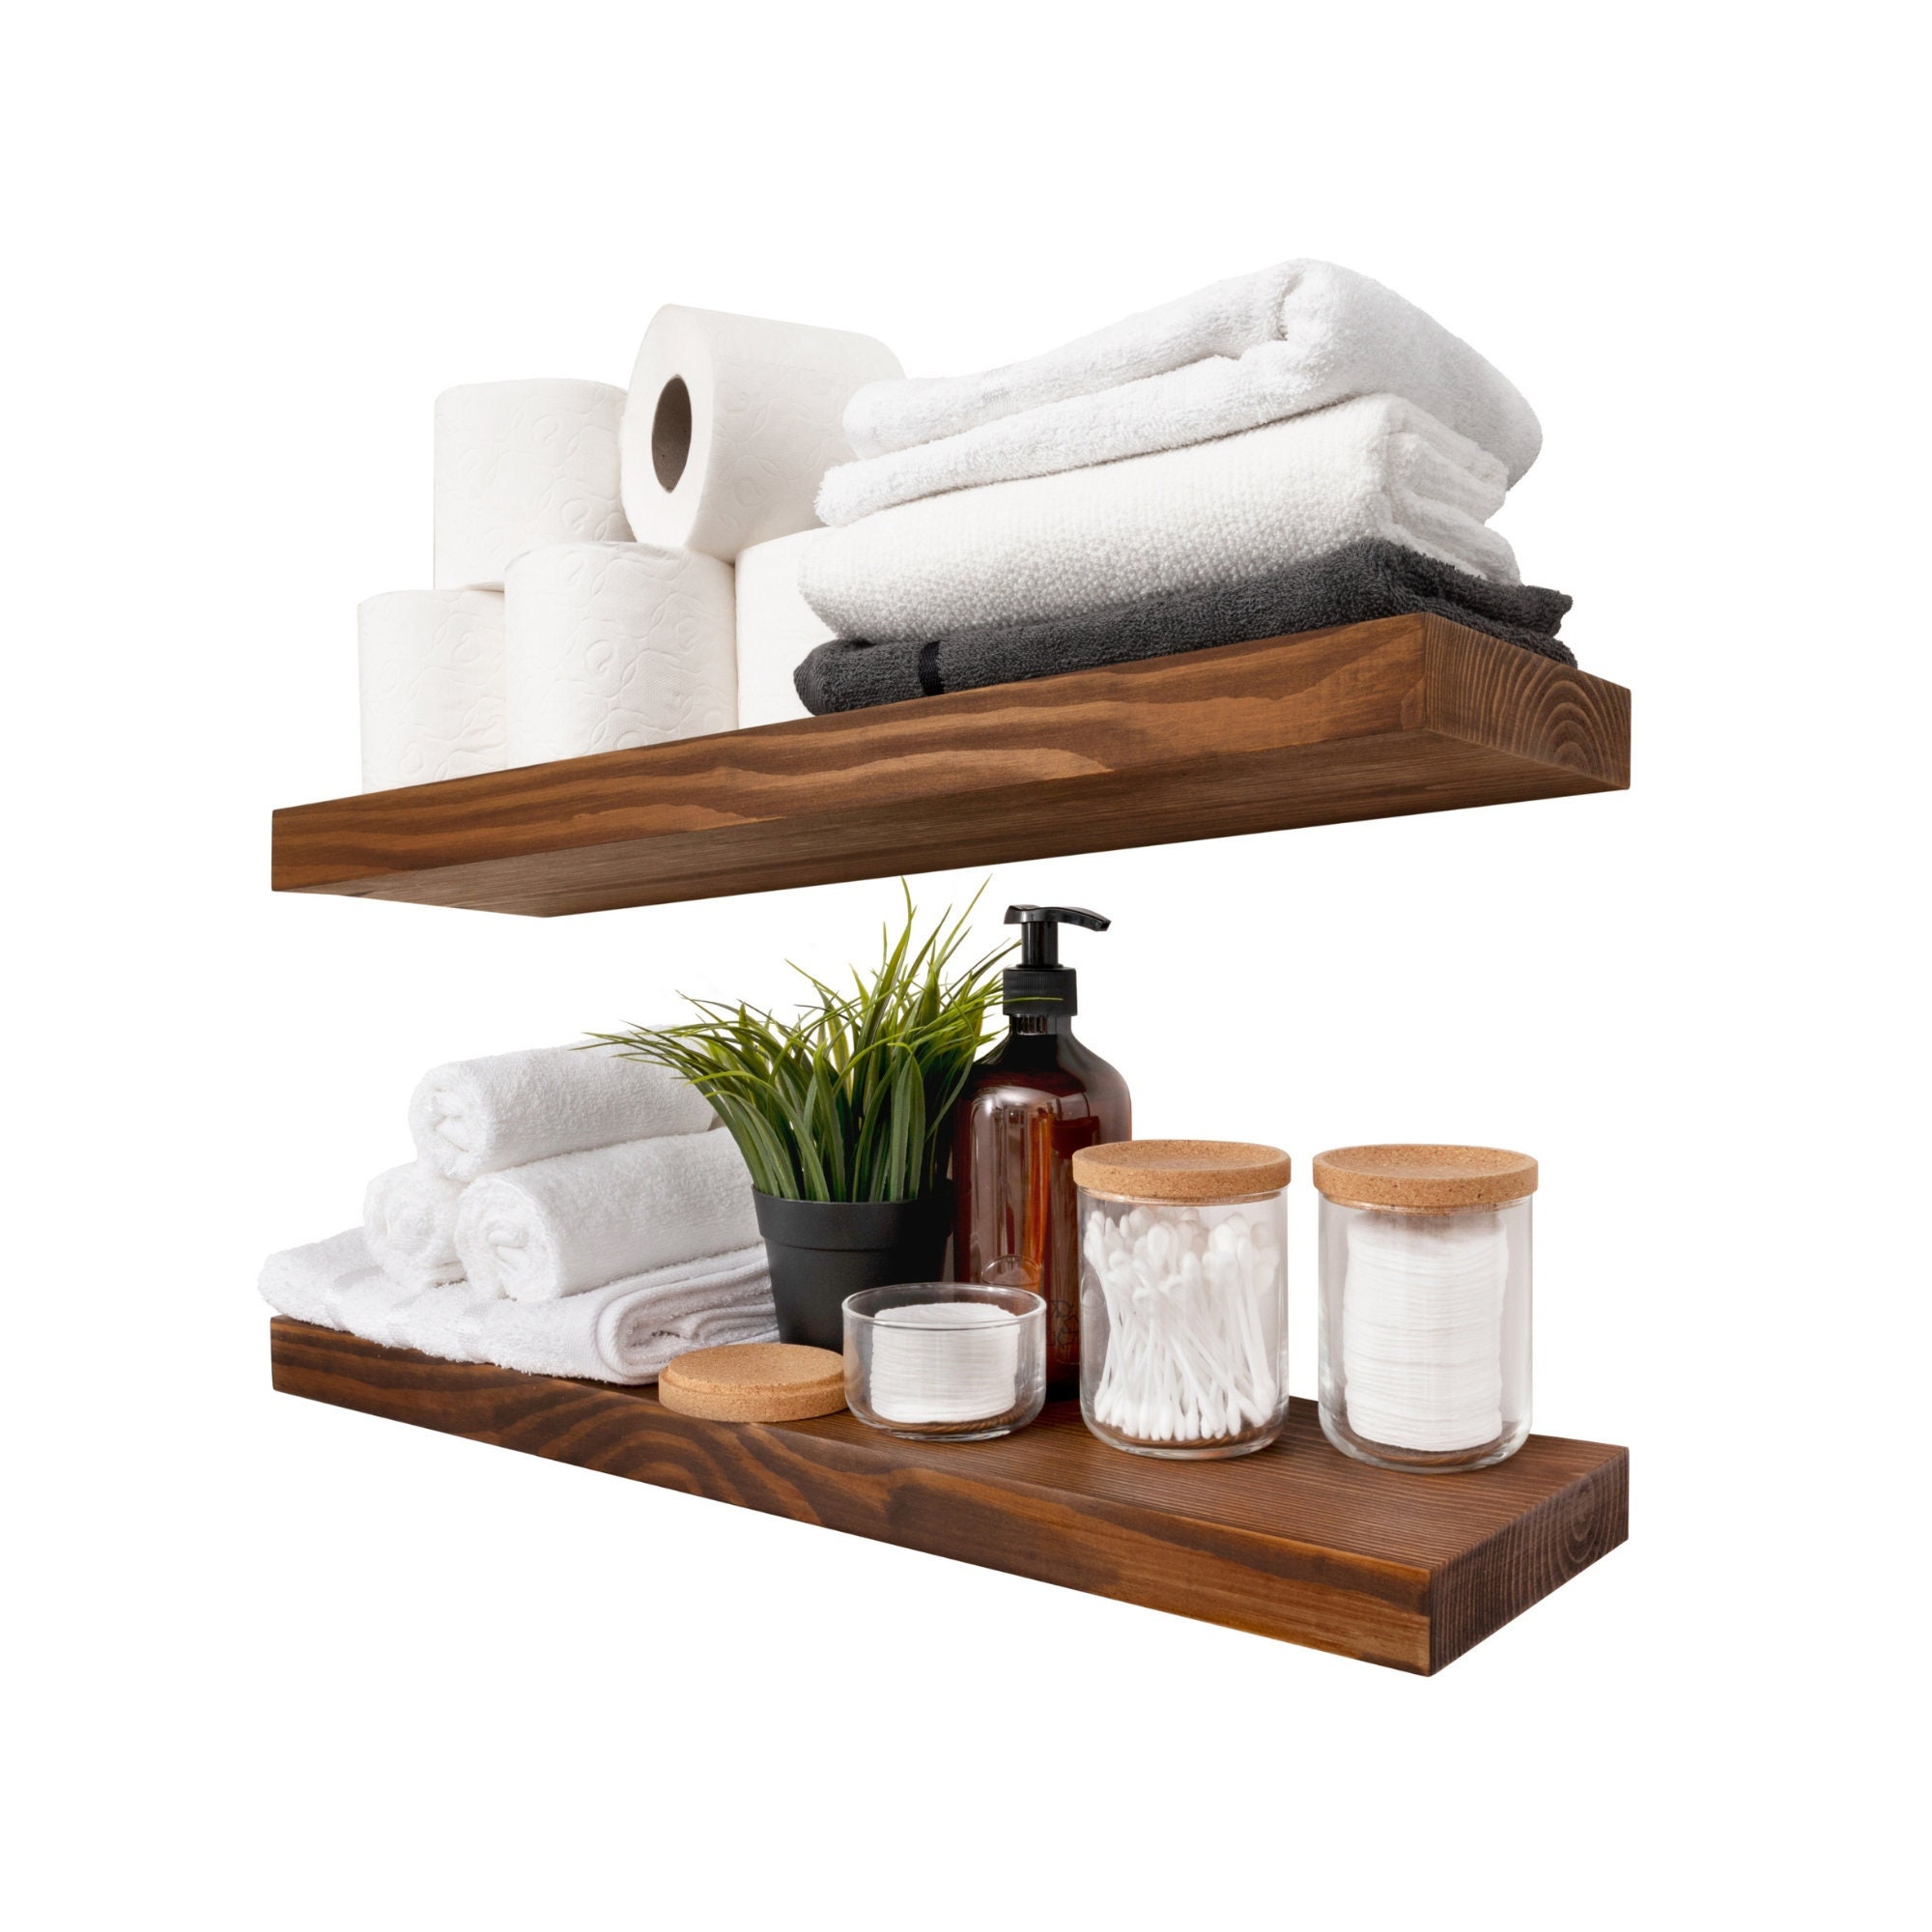 AMADA HOMEFURNISHING Floating Shelves, Bathroom Shelf with Towel Bar, Wall  Shelves for Bathroom/Living Room/Kitchen/Bedroom, Light Brown Shelves Set